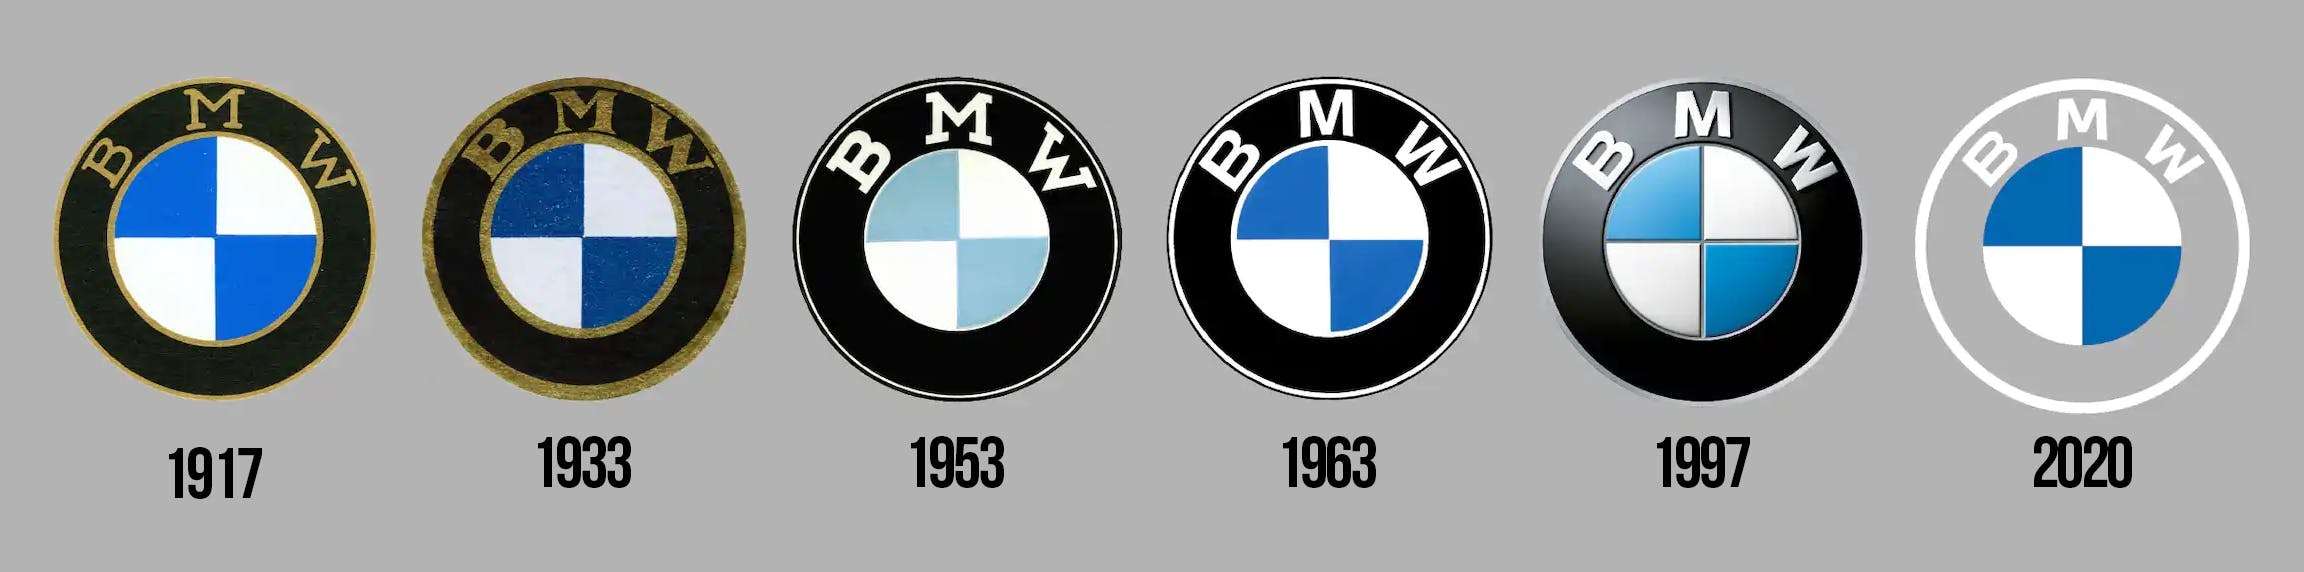 Теперь без черного: BMW сменила логотип — фото 1089392